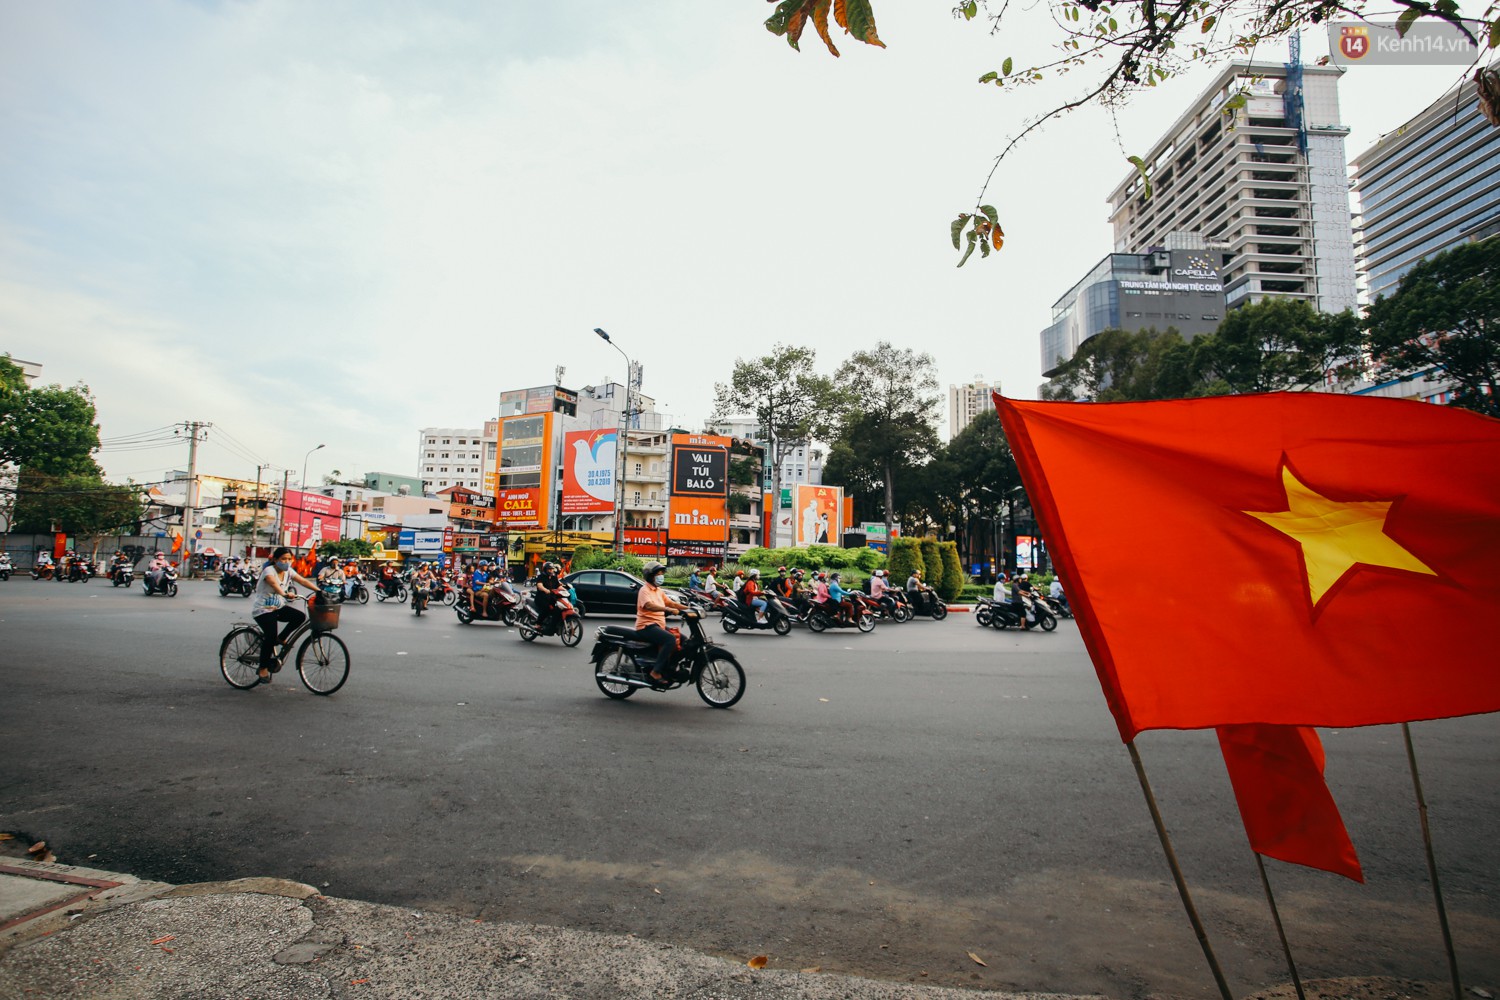 Sài Gòn bình yên lạ thường, đường phố vắng bóng phương tiện trong những ngày nghỉ lễ 30/4 - 1/5 - Ảnh 12.